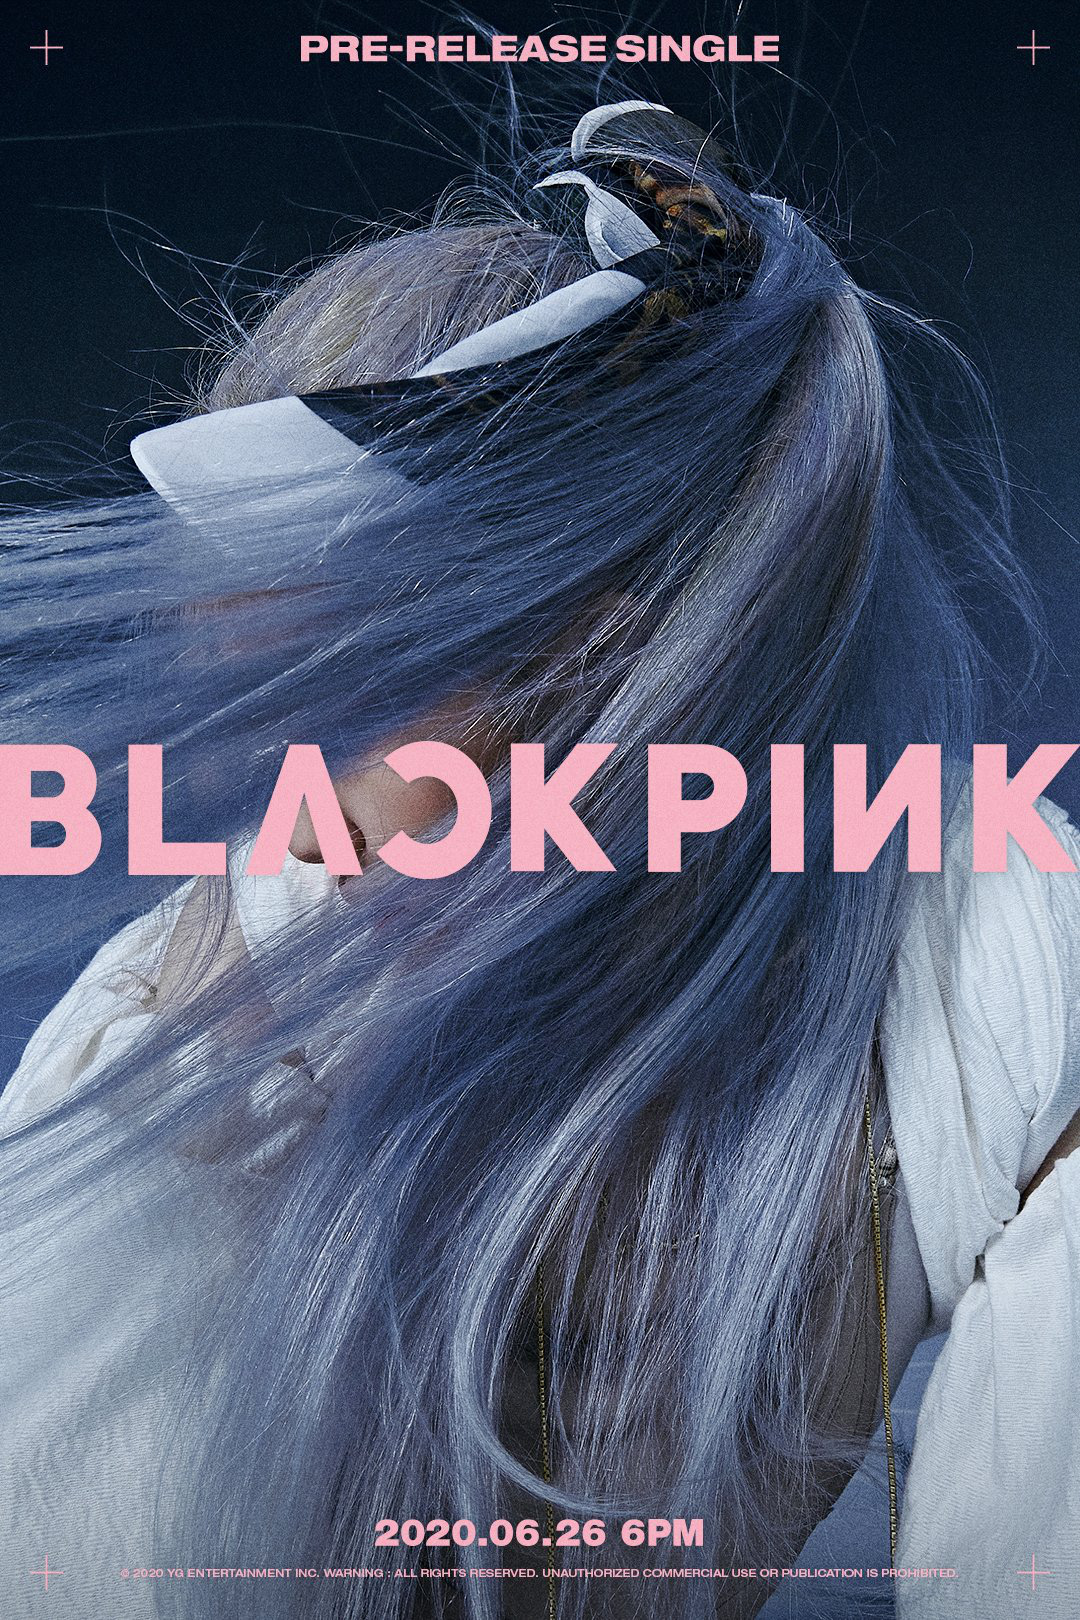 BlackPink đã tung ra teaser cực chất lượng cho sản phẩm âm nhạc mới. Hãy cùng xem hình ảnh đẹp lung linh và đầy bí ẩn này để tìm hiểu thêm về nguồn cảm hứng của những sản phẩm âm nhạc đình đám của nhóm nhạc này.